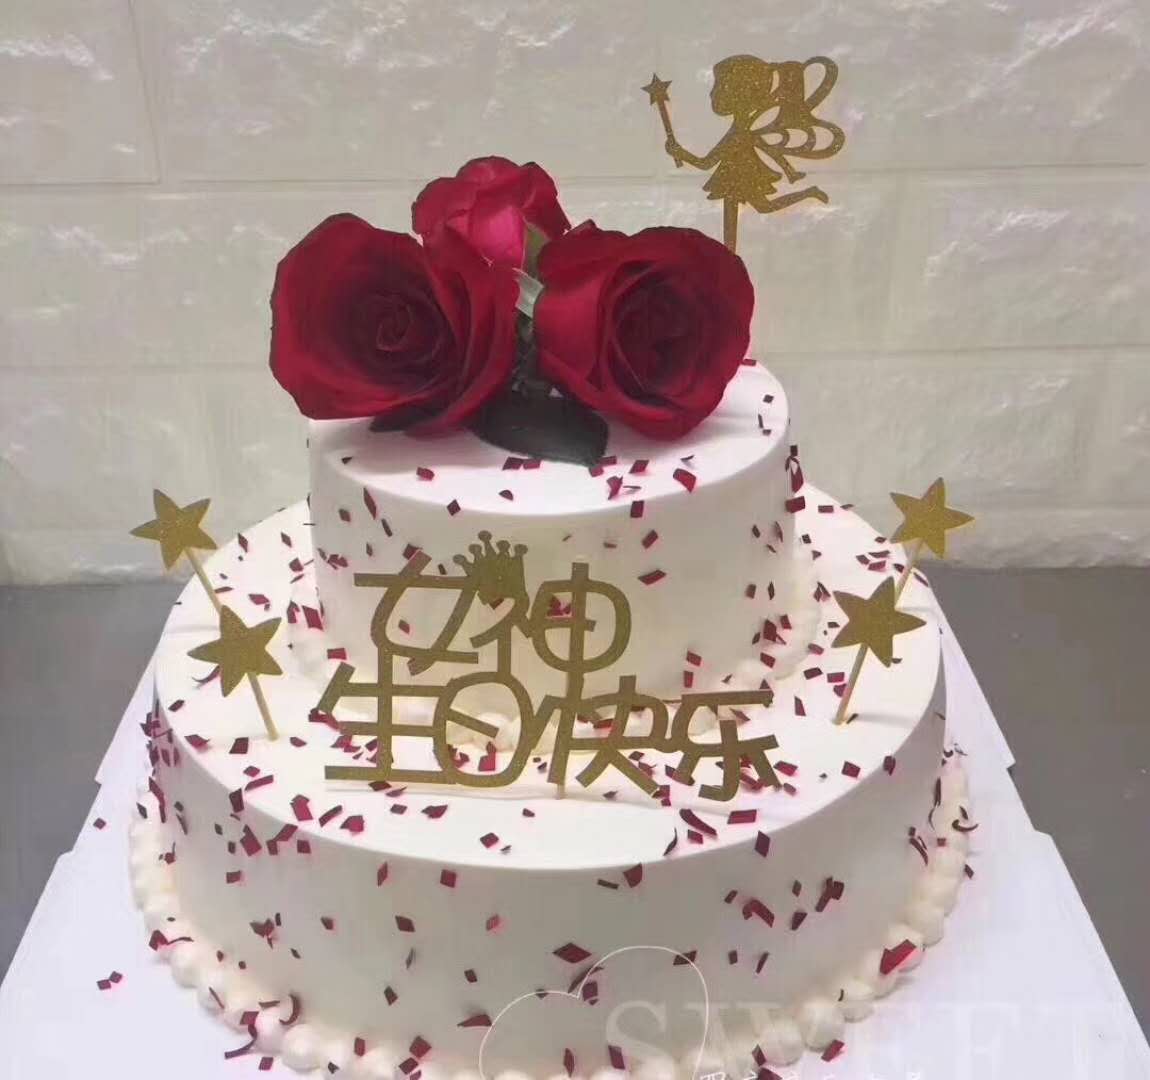 生日蛋糕 慕斯 水果 法式巧克力 生日 节日 纪念日蛋糕 来图定制